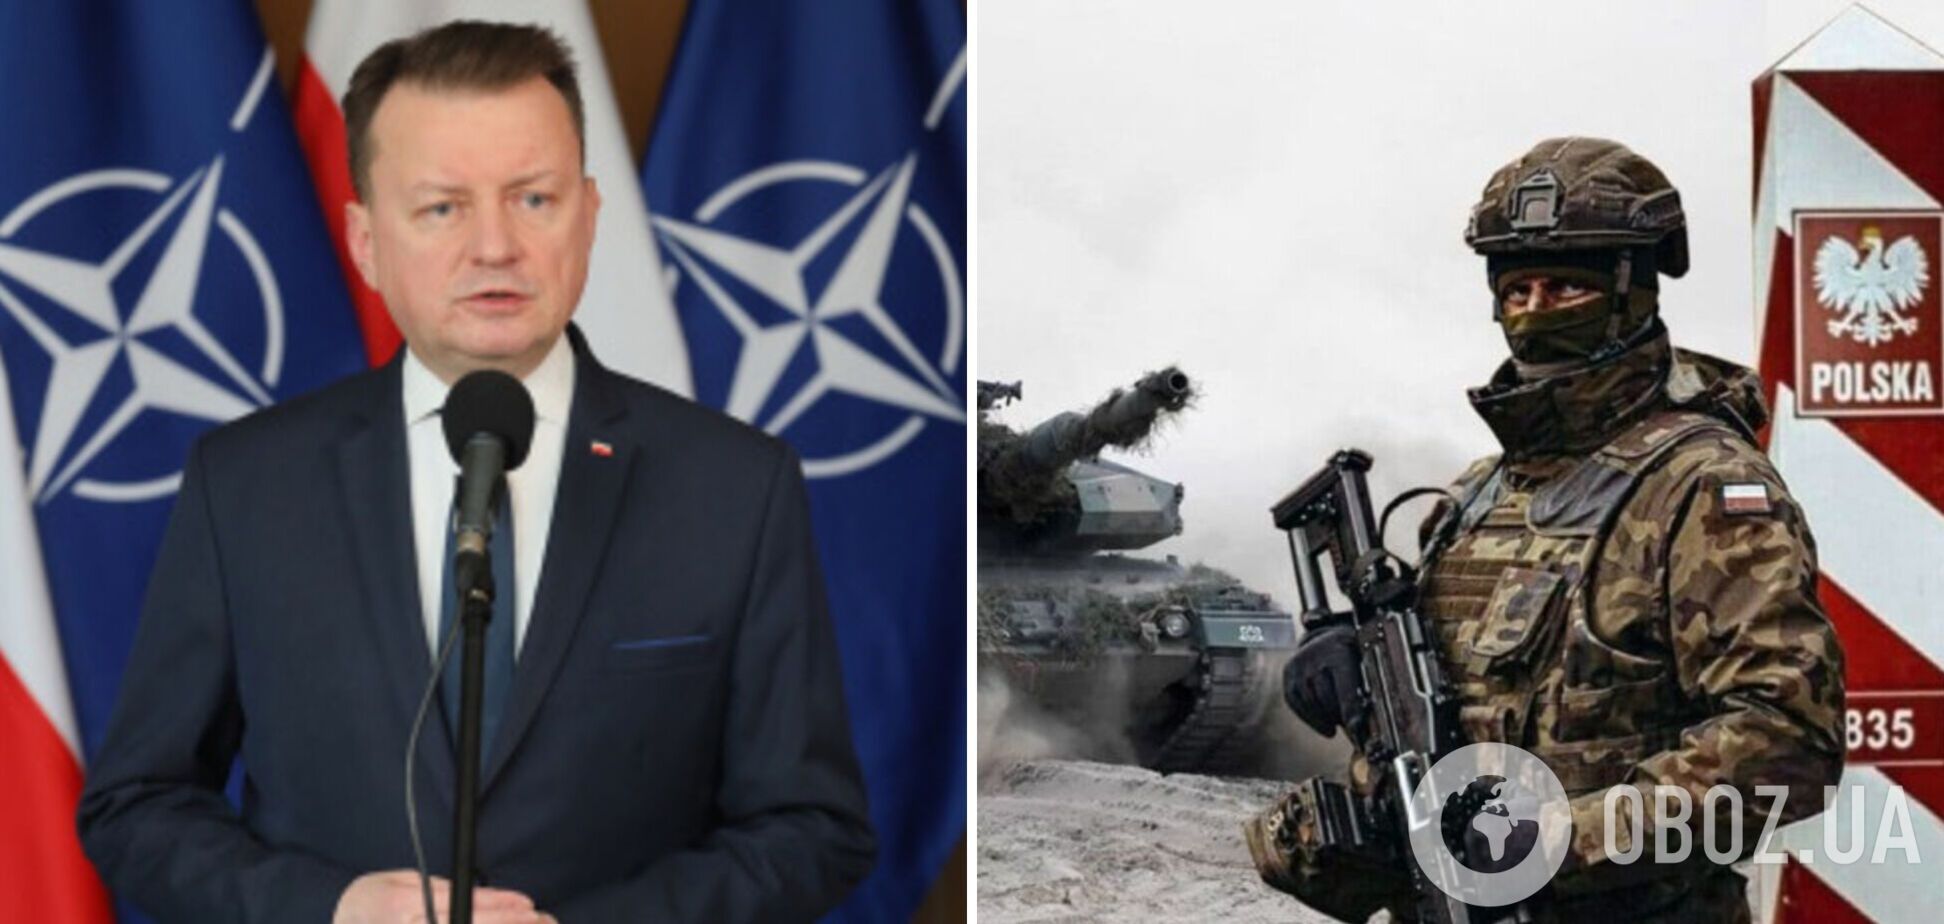 'Наша обязанность защищать': министр обороны Польши призвал граждан быть готовыми воевать за страну